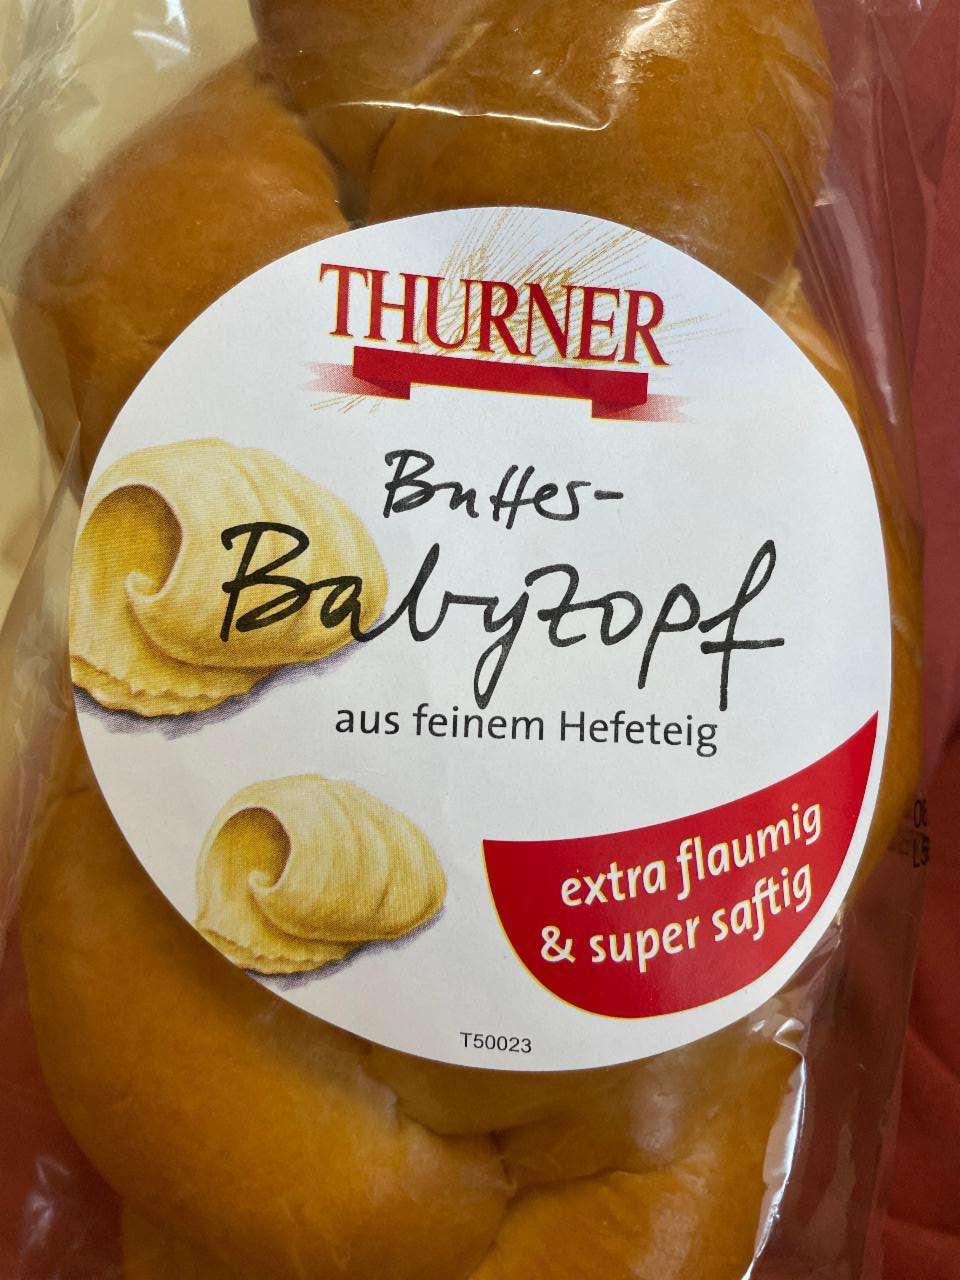 Fotografie - Butter-Babyzopf Thurner